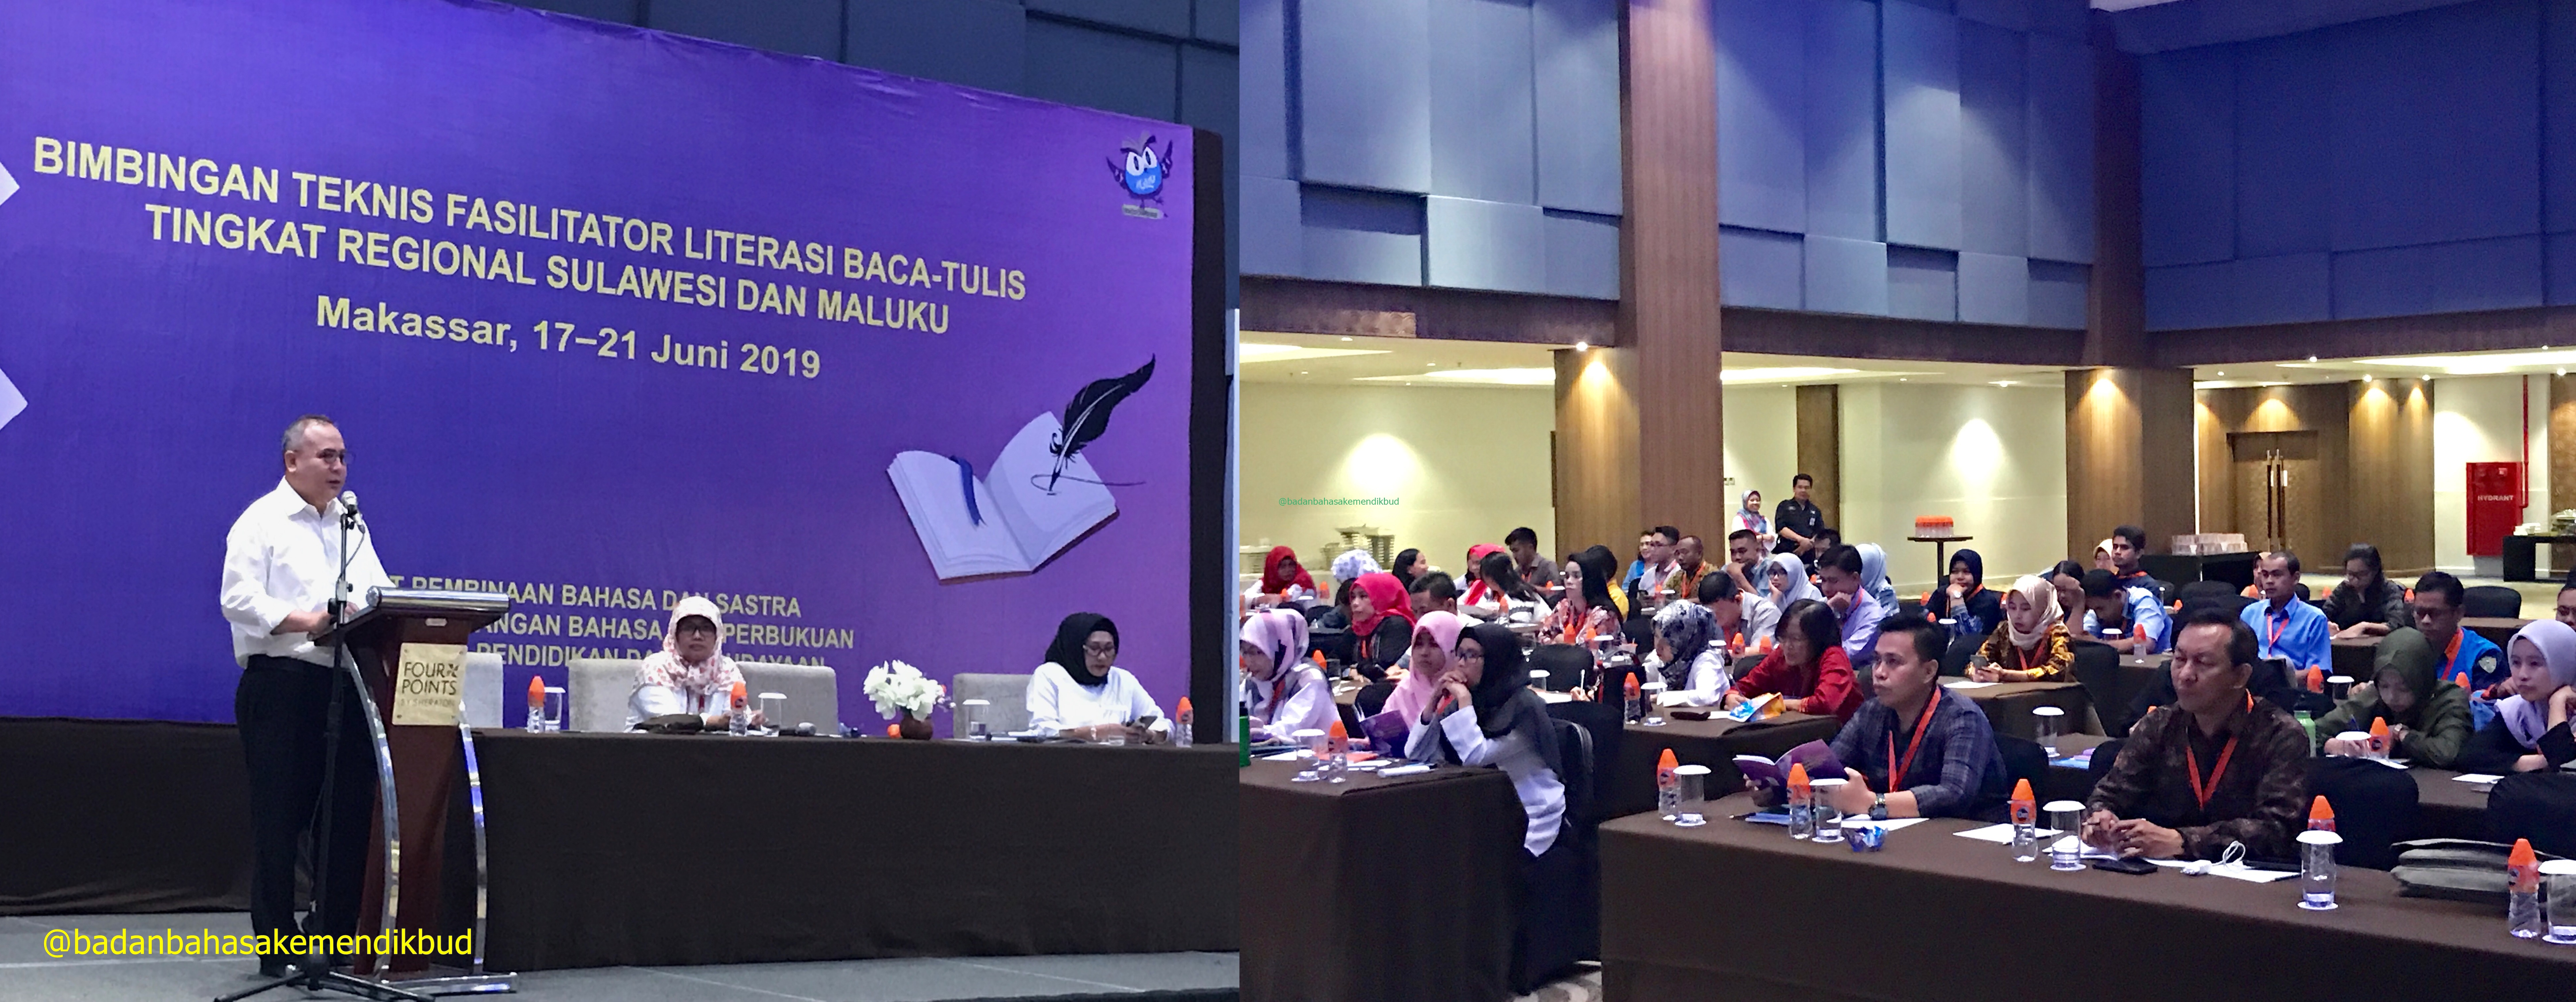 Gelar GLN 2019 melalui Bimbingan Teknis Fasilitator Literasi Baca-Tulis Tingkat Regional Sulawesi dan Maluku